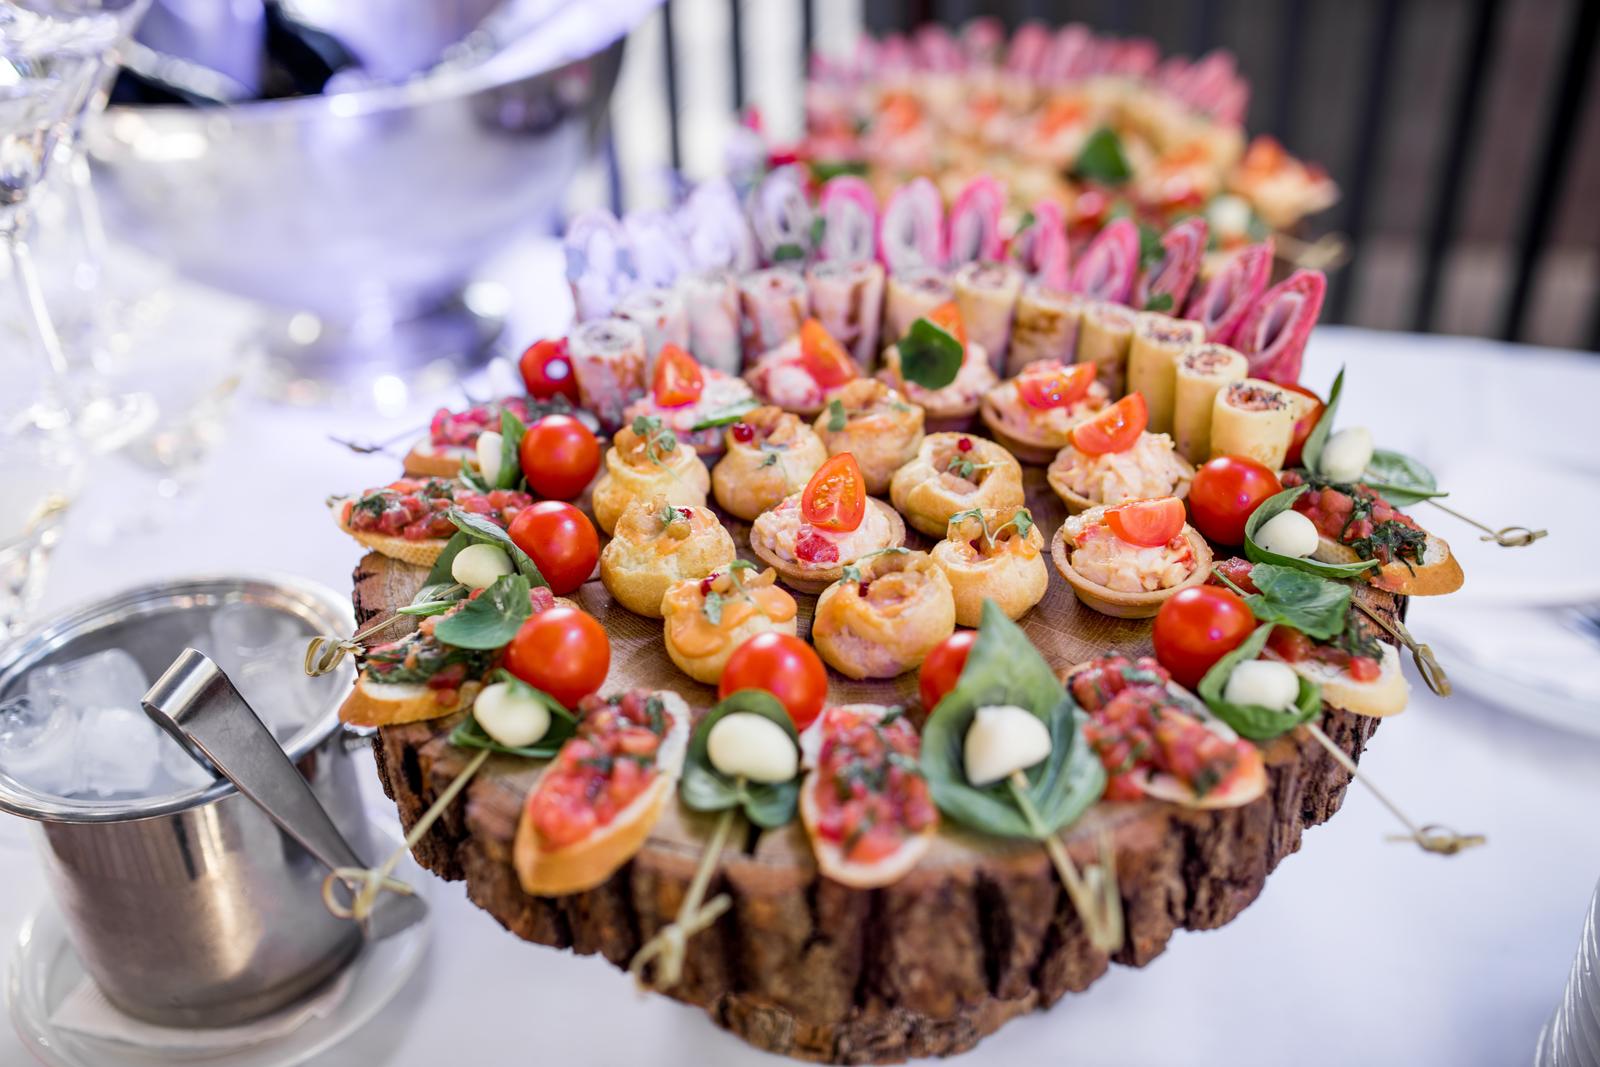 22 CM OÜ - Event catering activities in Estonia